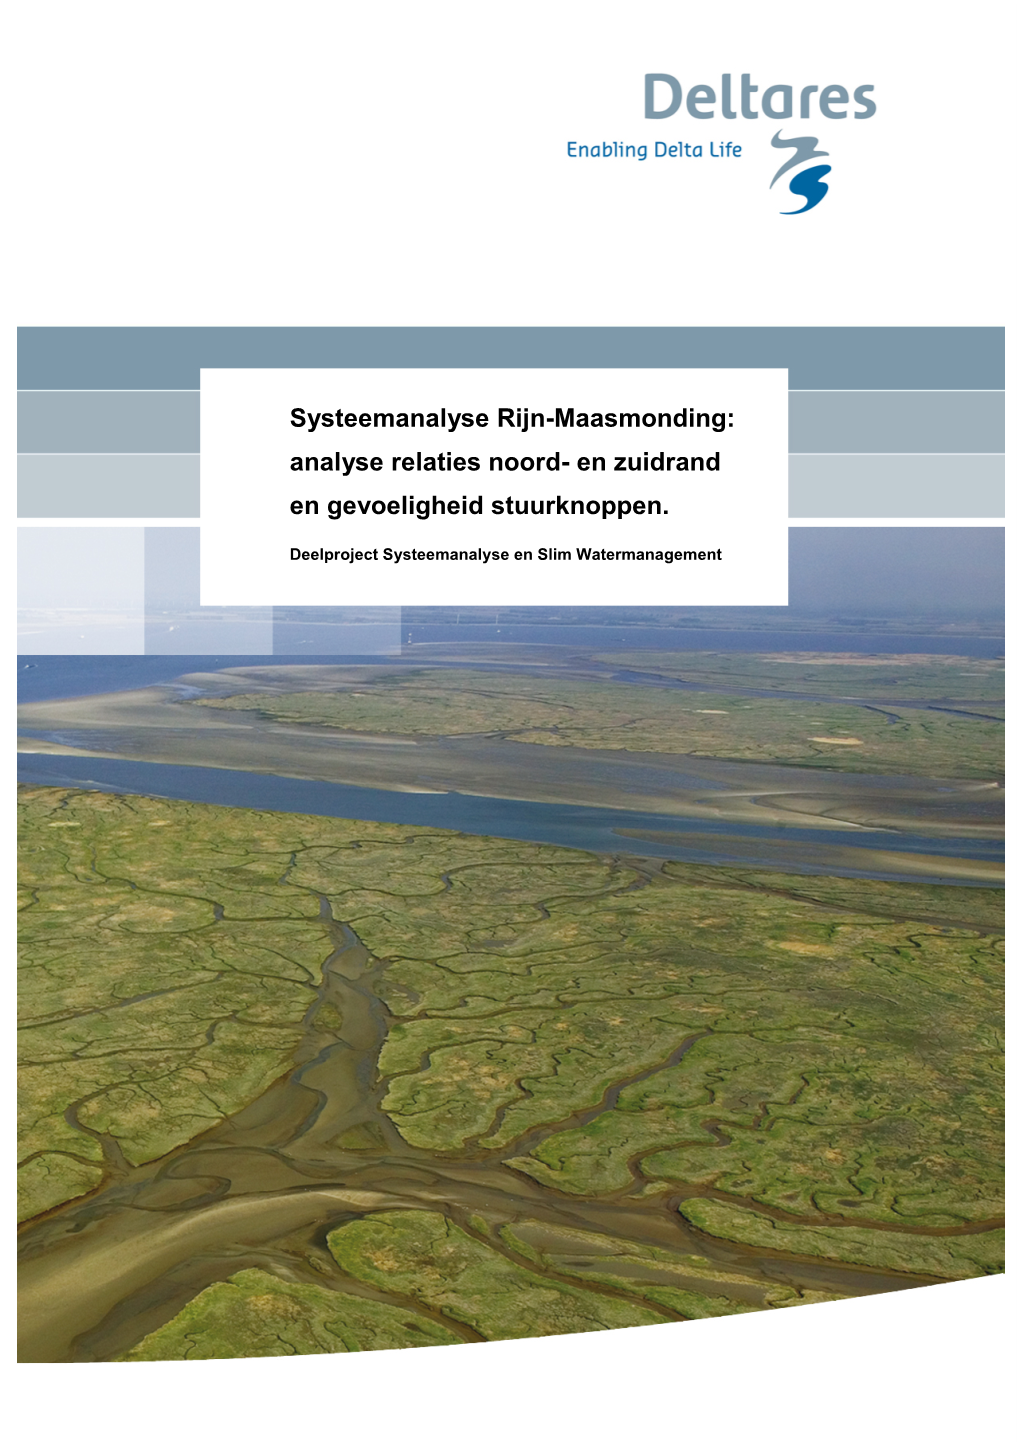 Systeemanalyse Rijn-Maasmonding: Analyse Relaties Noord- En Zuidrand En Gevoeligheid Stuurknoppen